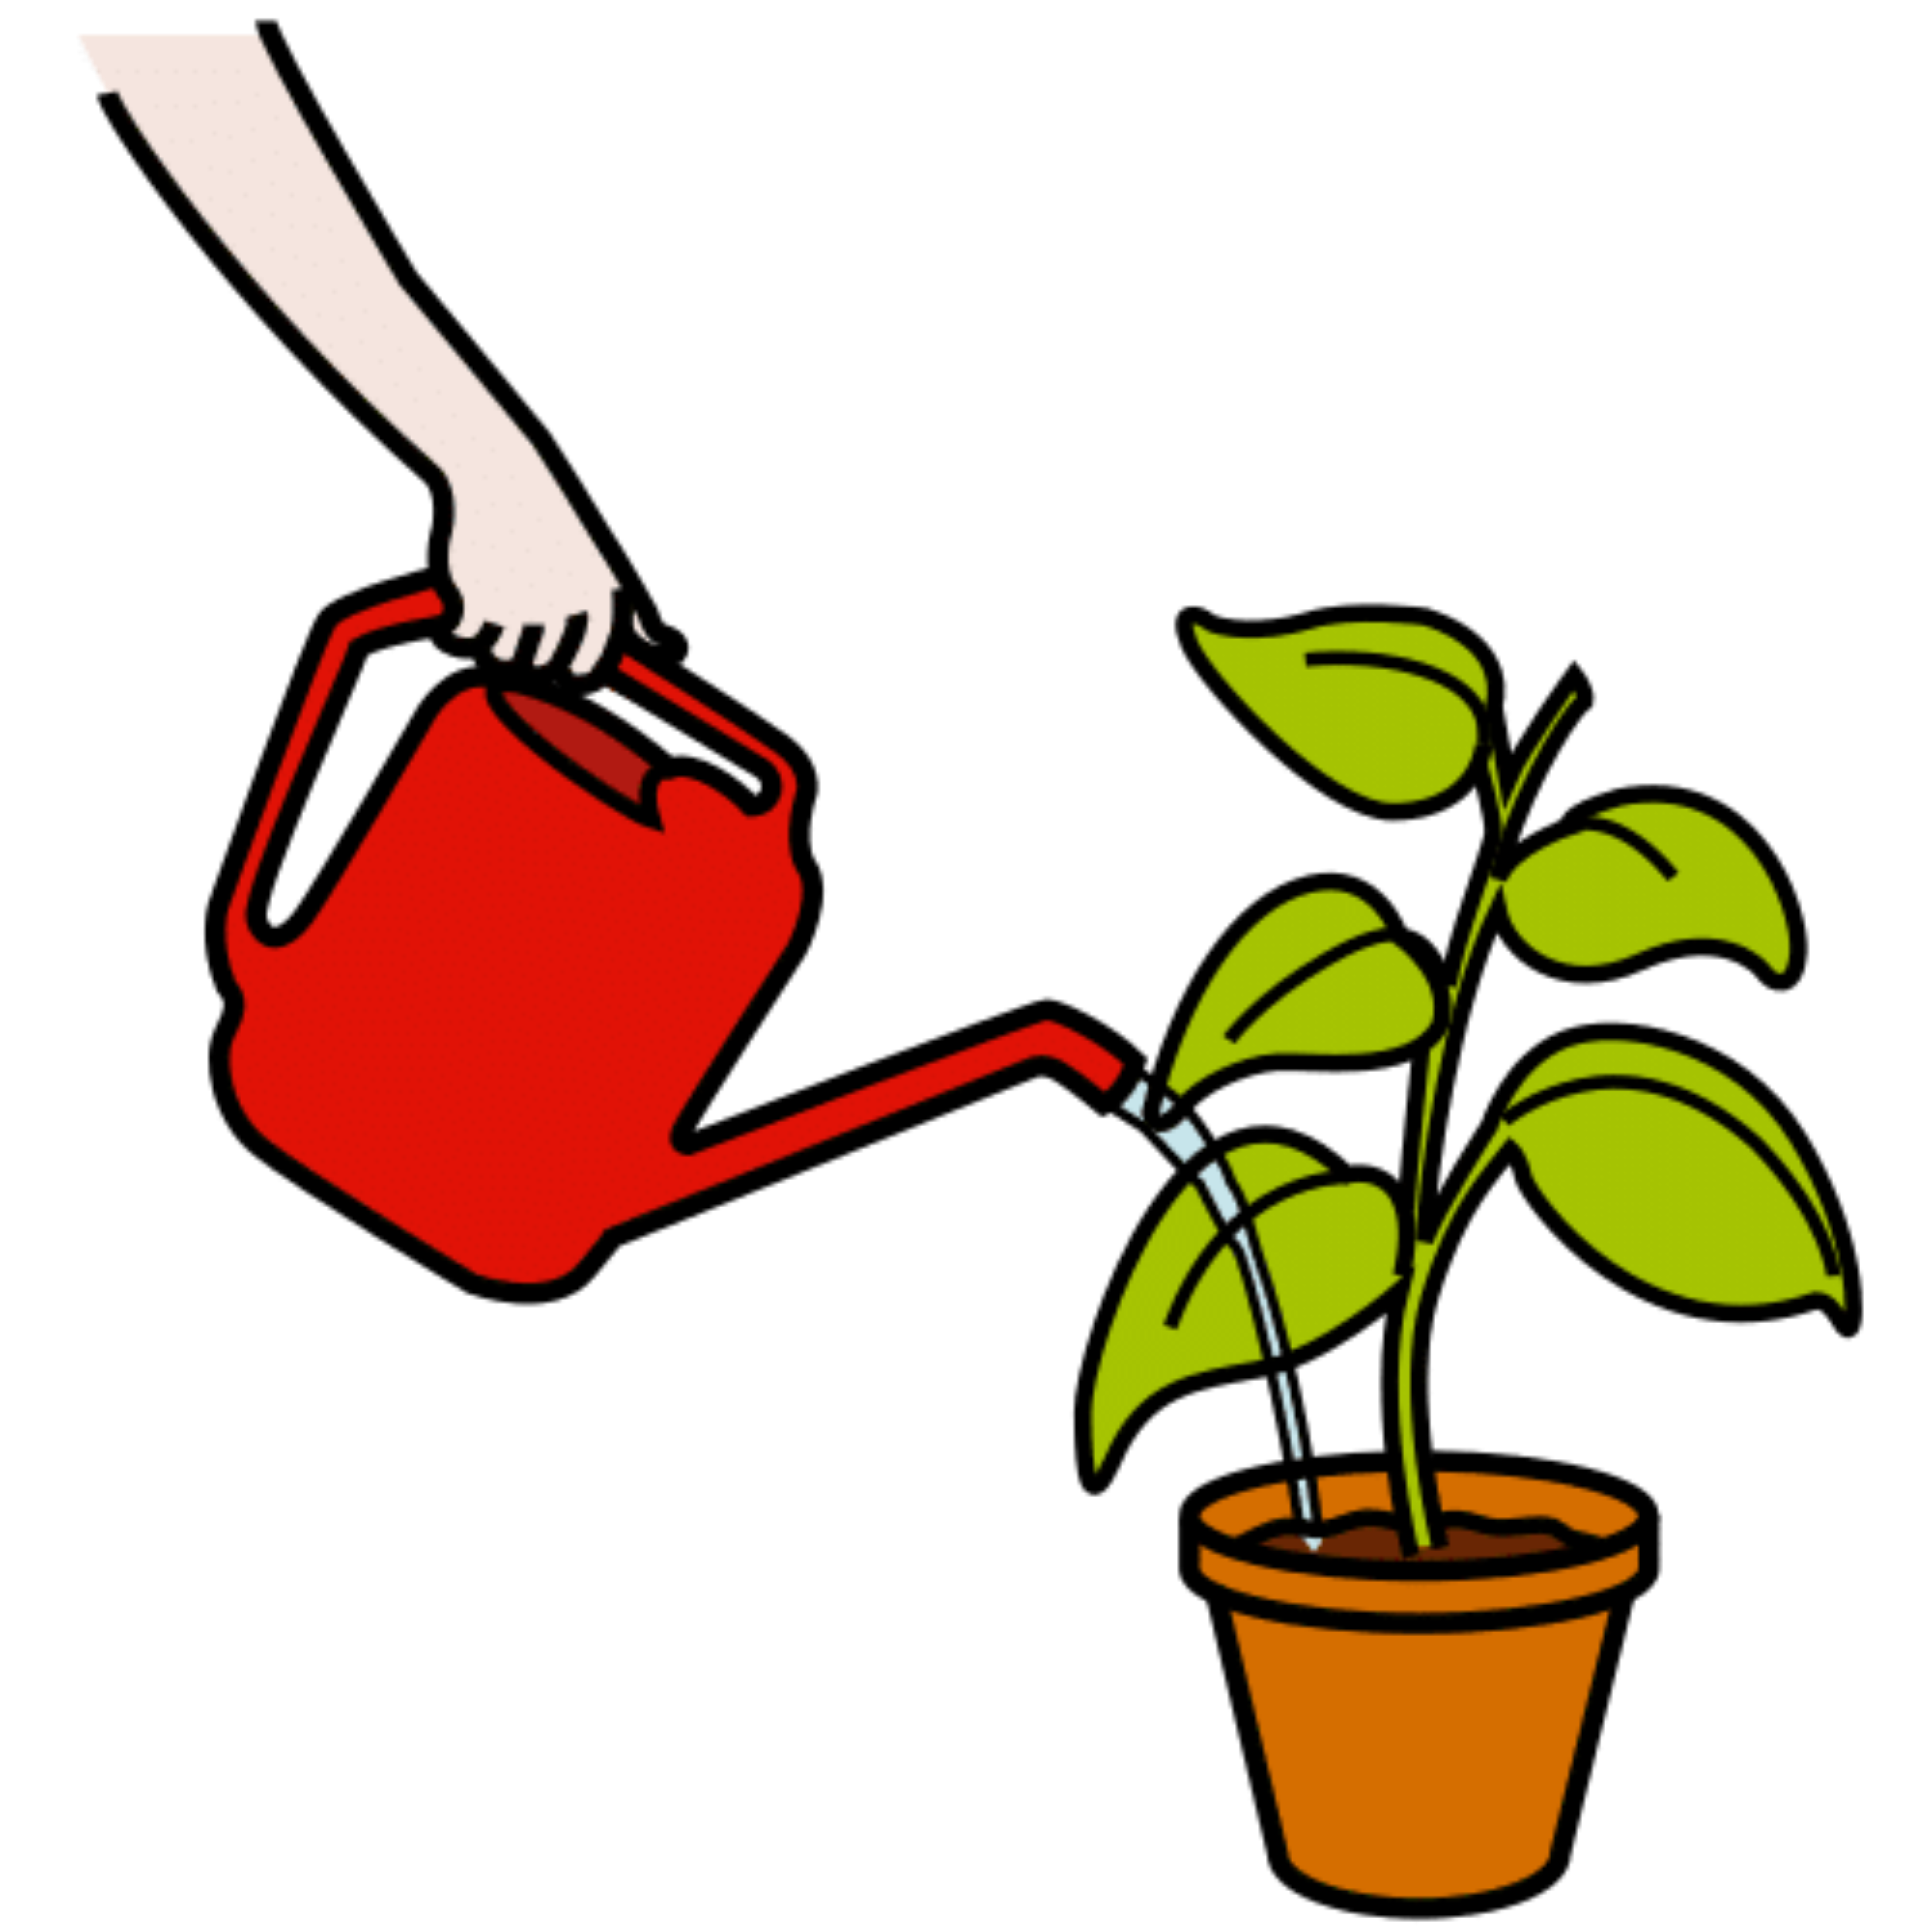 La imagen muestra una regadora roja y una planta